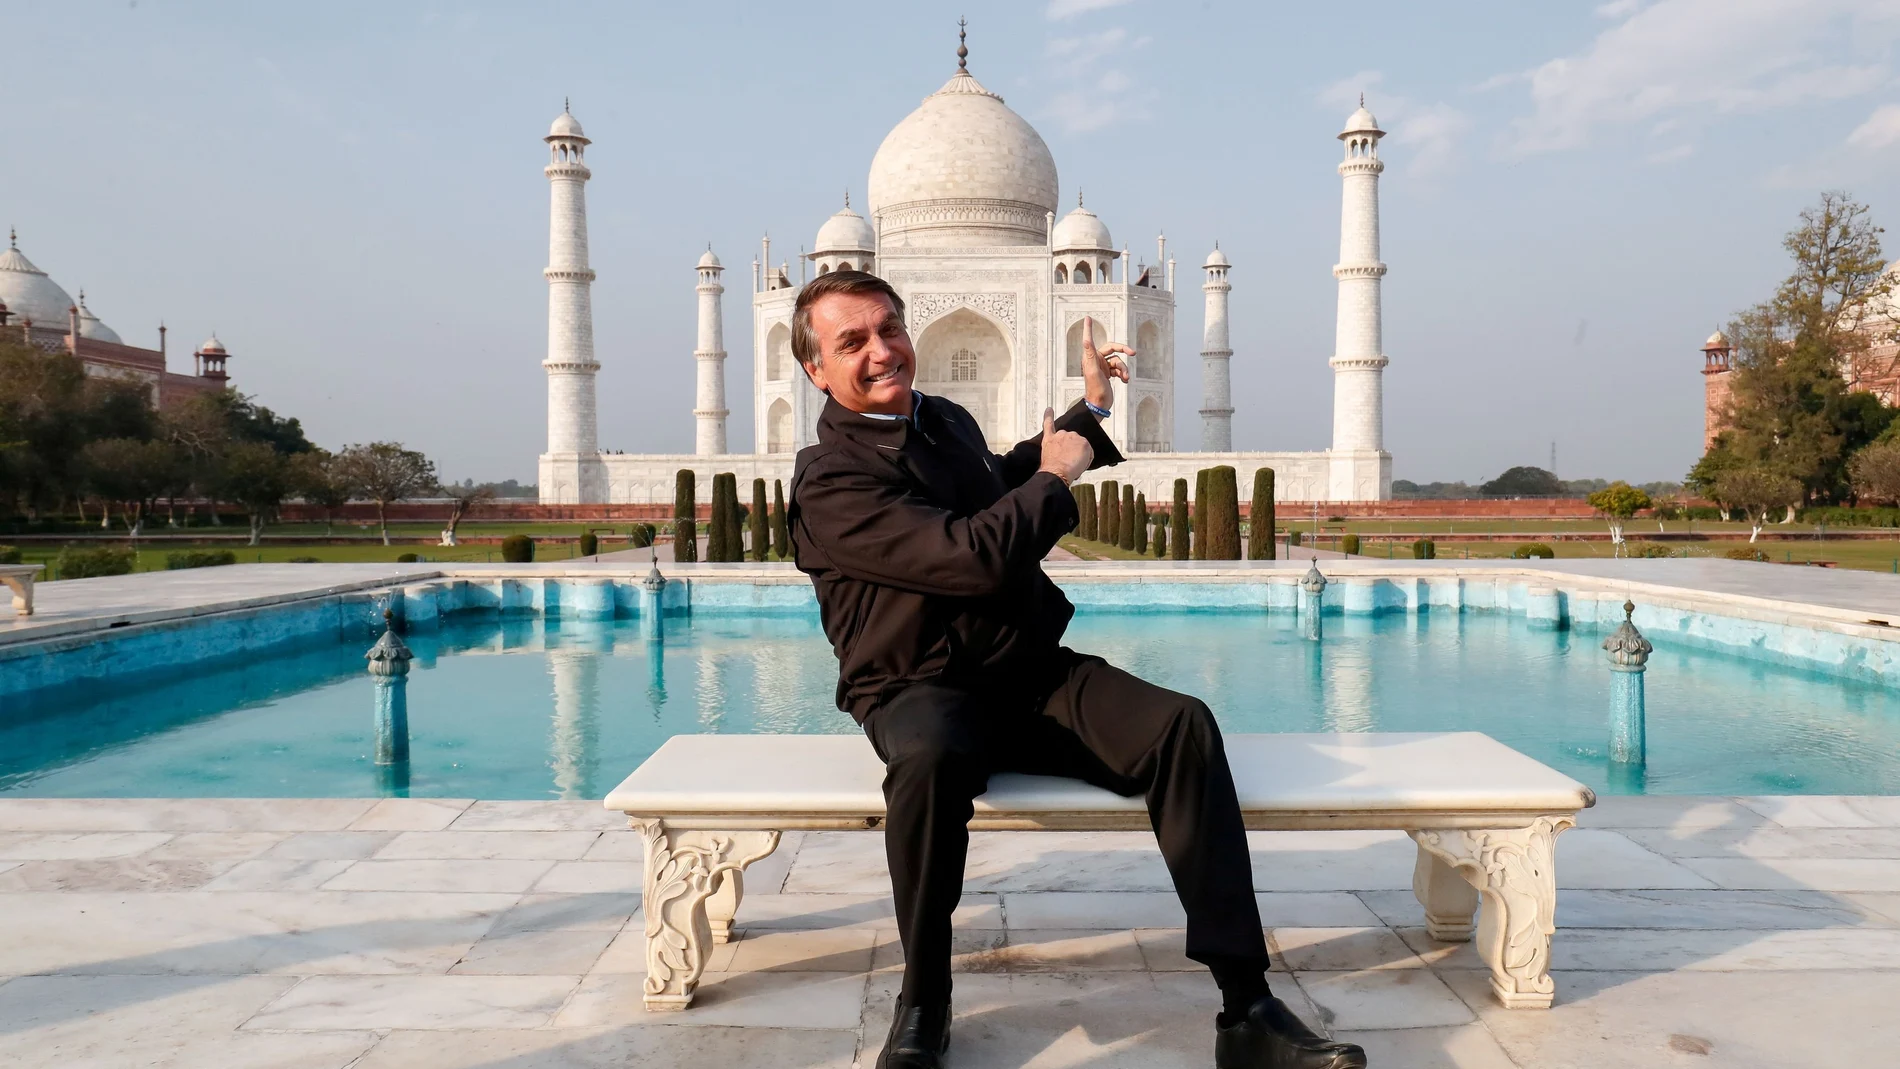 Brazil's President Jair Bolsonaro poses for a photograph at the Taj Mahal in Agra